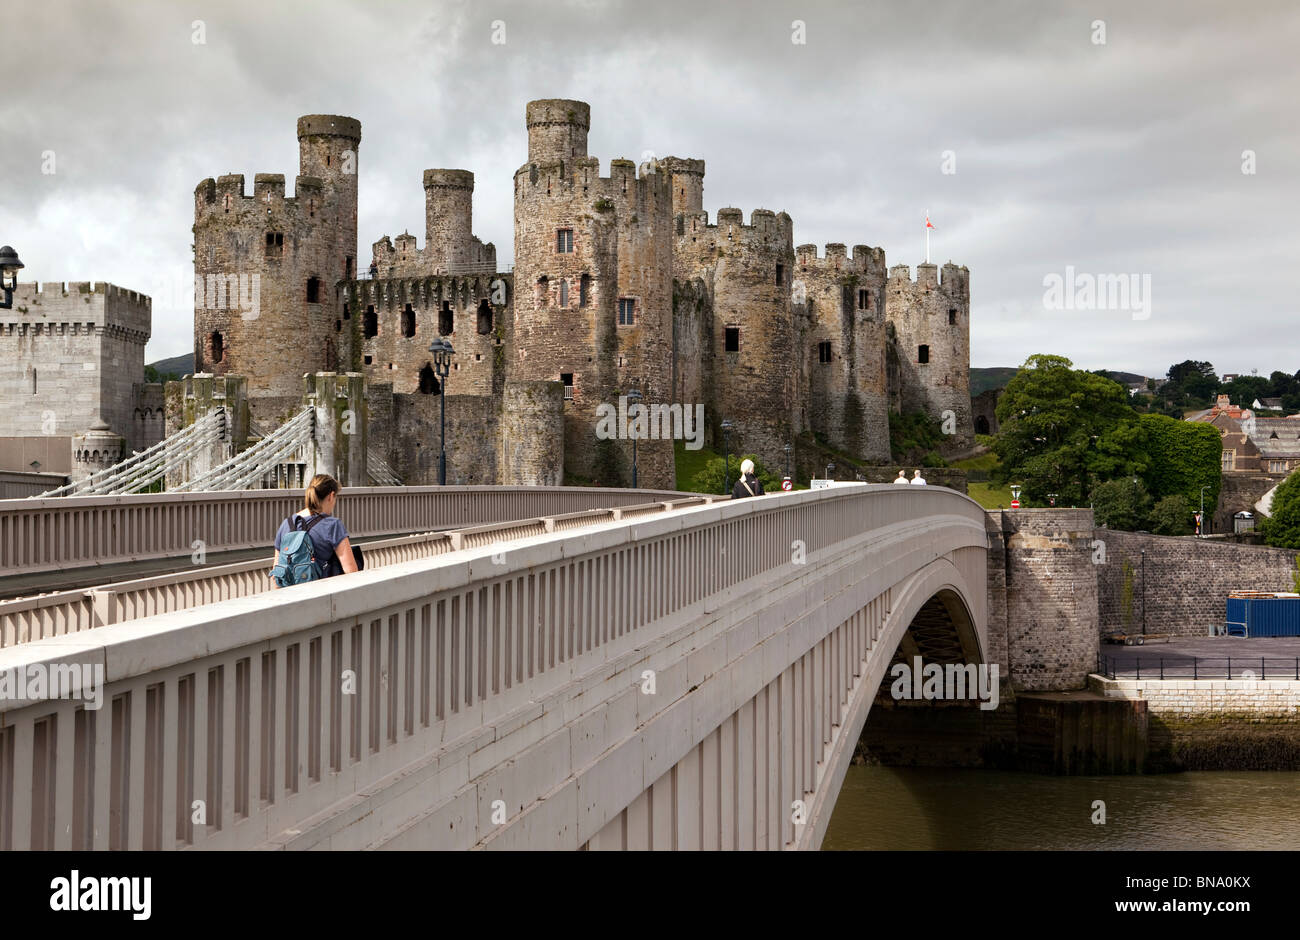 Royaume-uni, Pays de Galles, Gwynedd, Conway Castle, avec le pont suspendu de Telford et A55 road bridge Banque D'Images